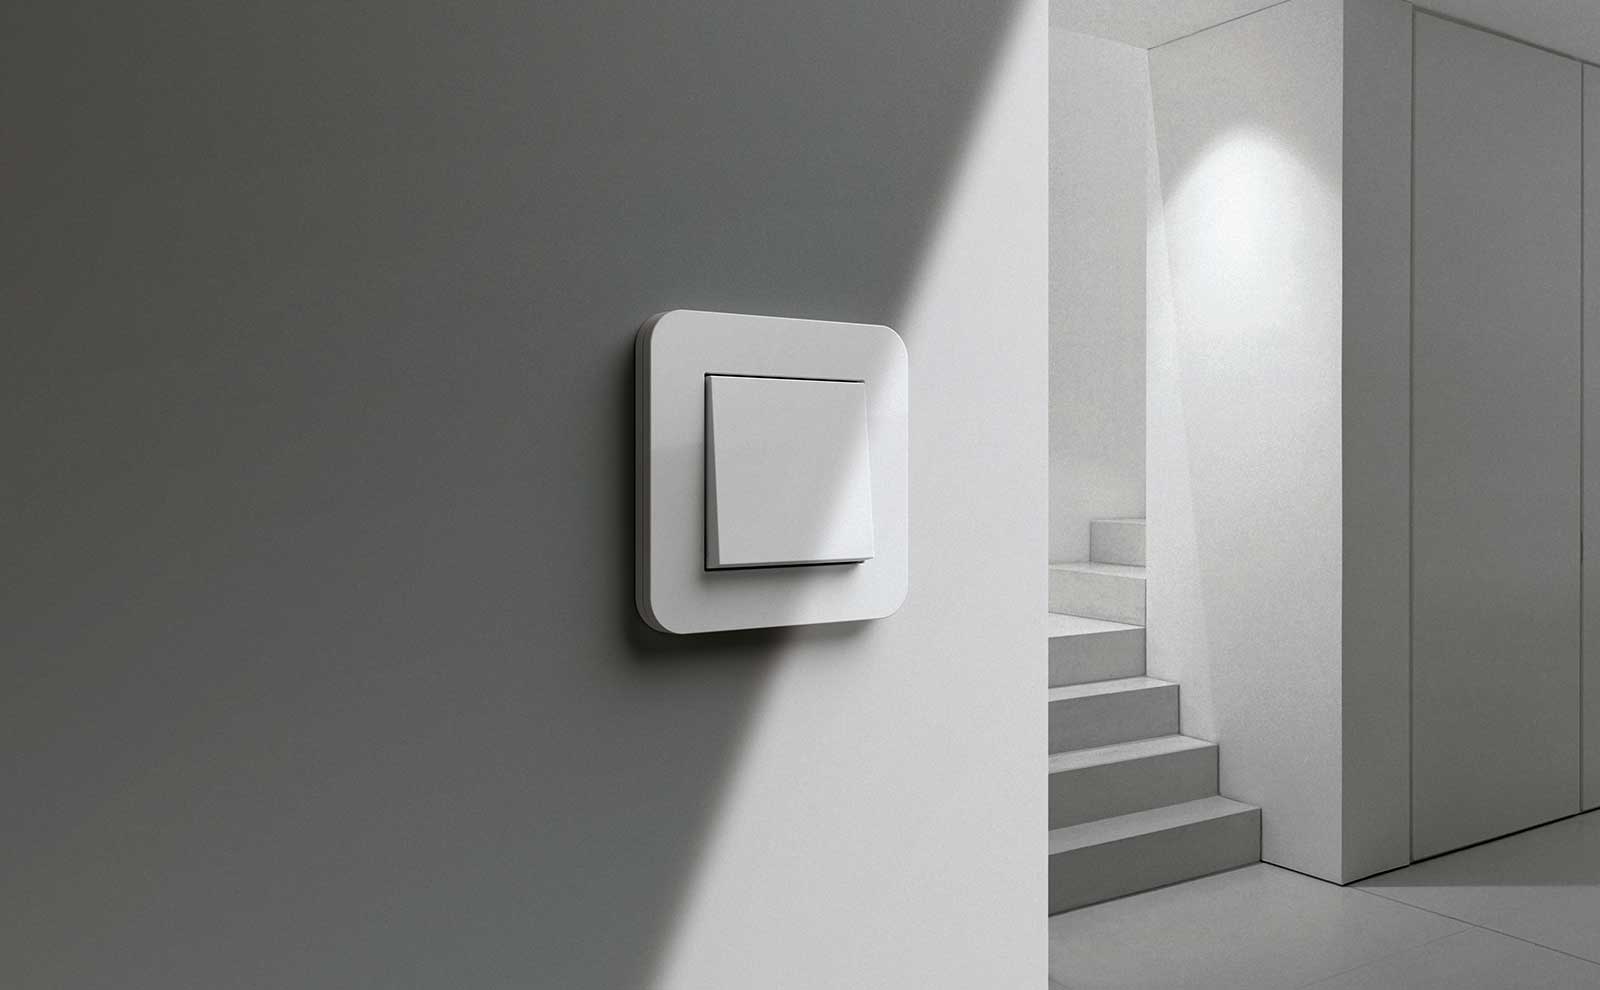 El interruptor de la luz personalizado para su hogar. ✓Elección libre de colores y materiales ✓Diseños premiados ✓Con función de regulación